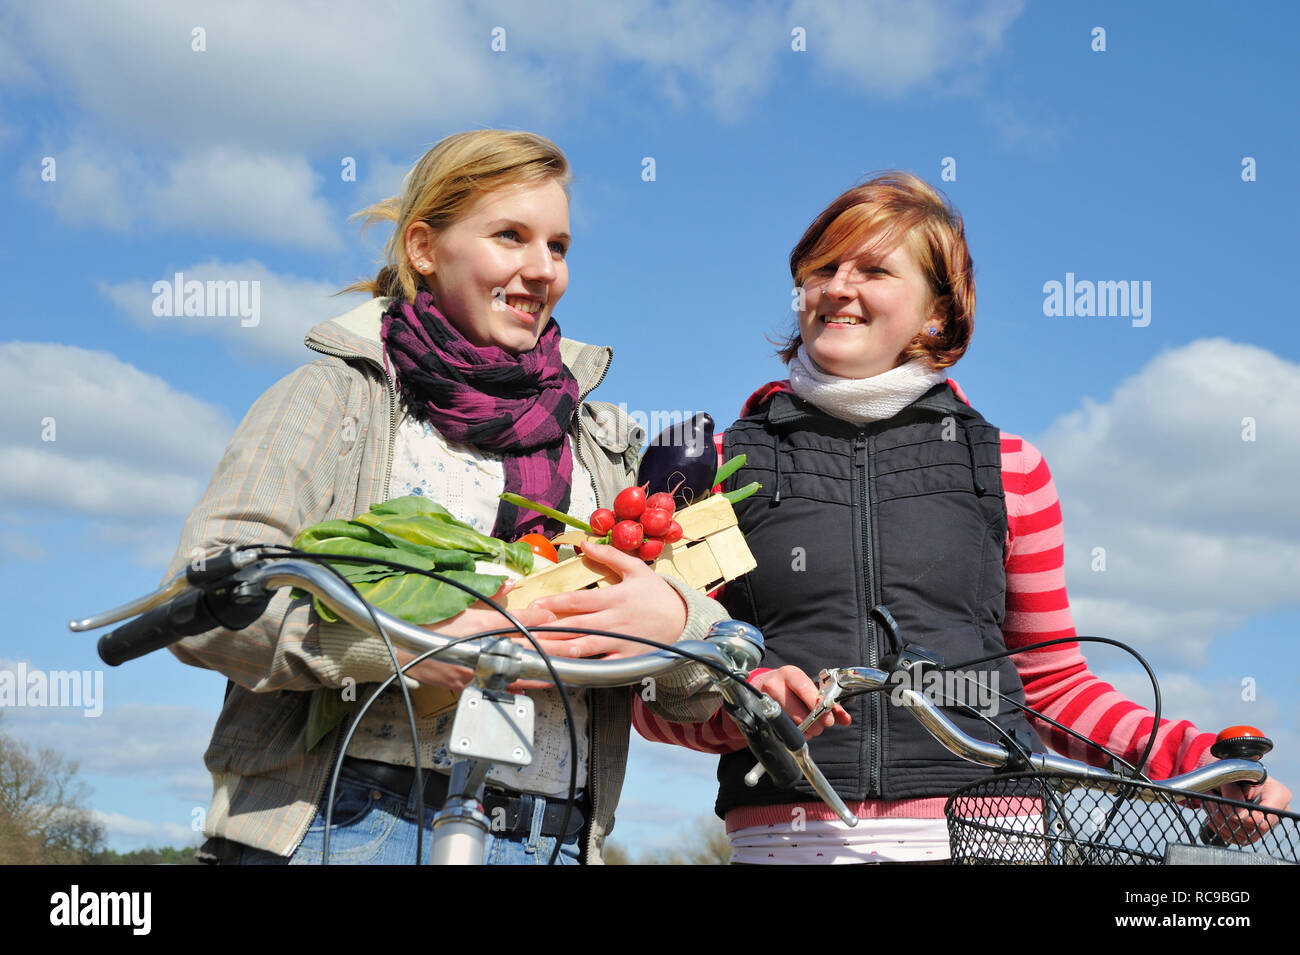 Zwei jungendliche Frauen mit Fahrrad und Gemüsekorb - junges Gemüse | zwei junge Frauen mit ihrem Fahrrad und ein Gemüse Warenkorb Stockfoto